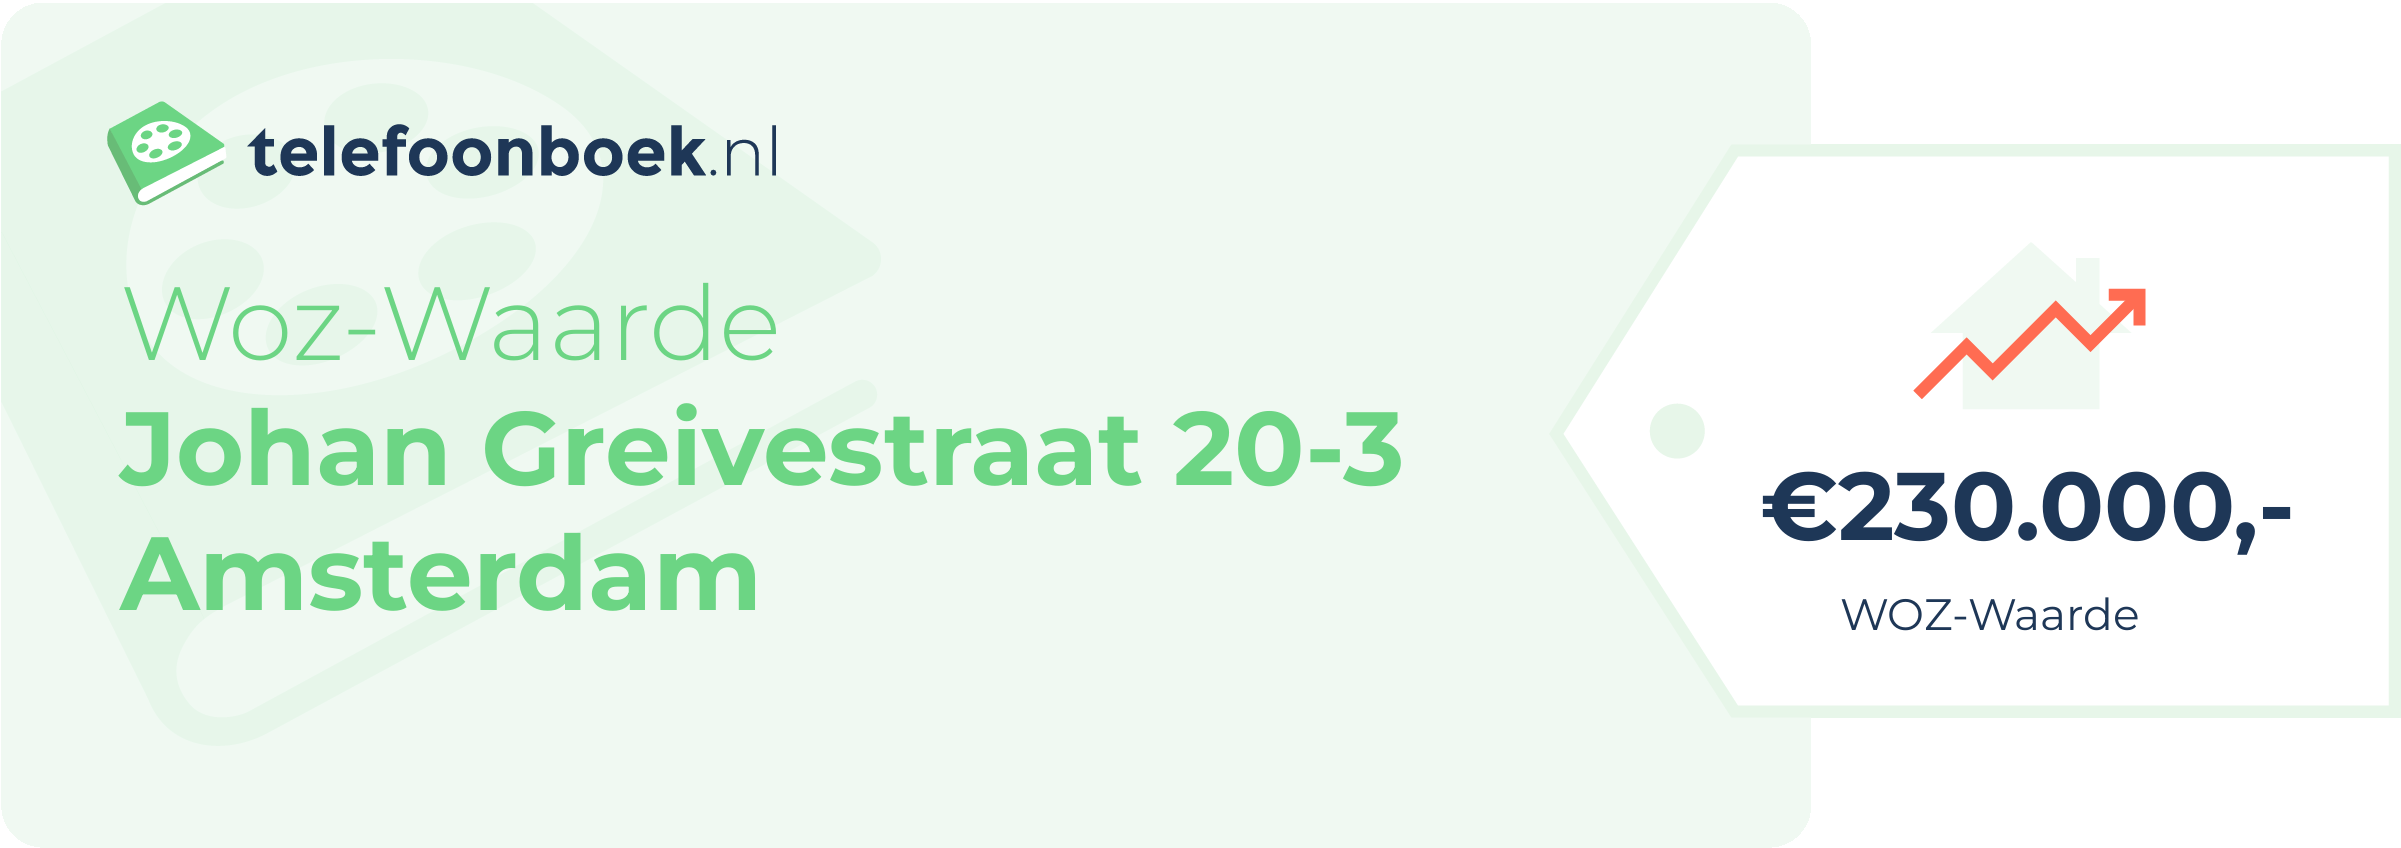 WOZ-waarde Johan Greivestraat 20-3 Amsterdam